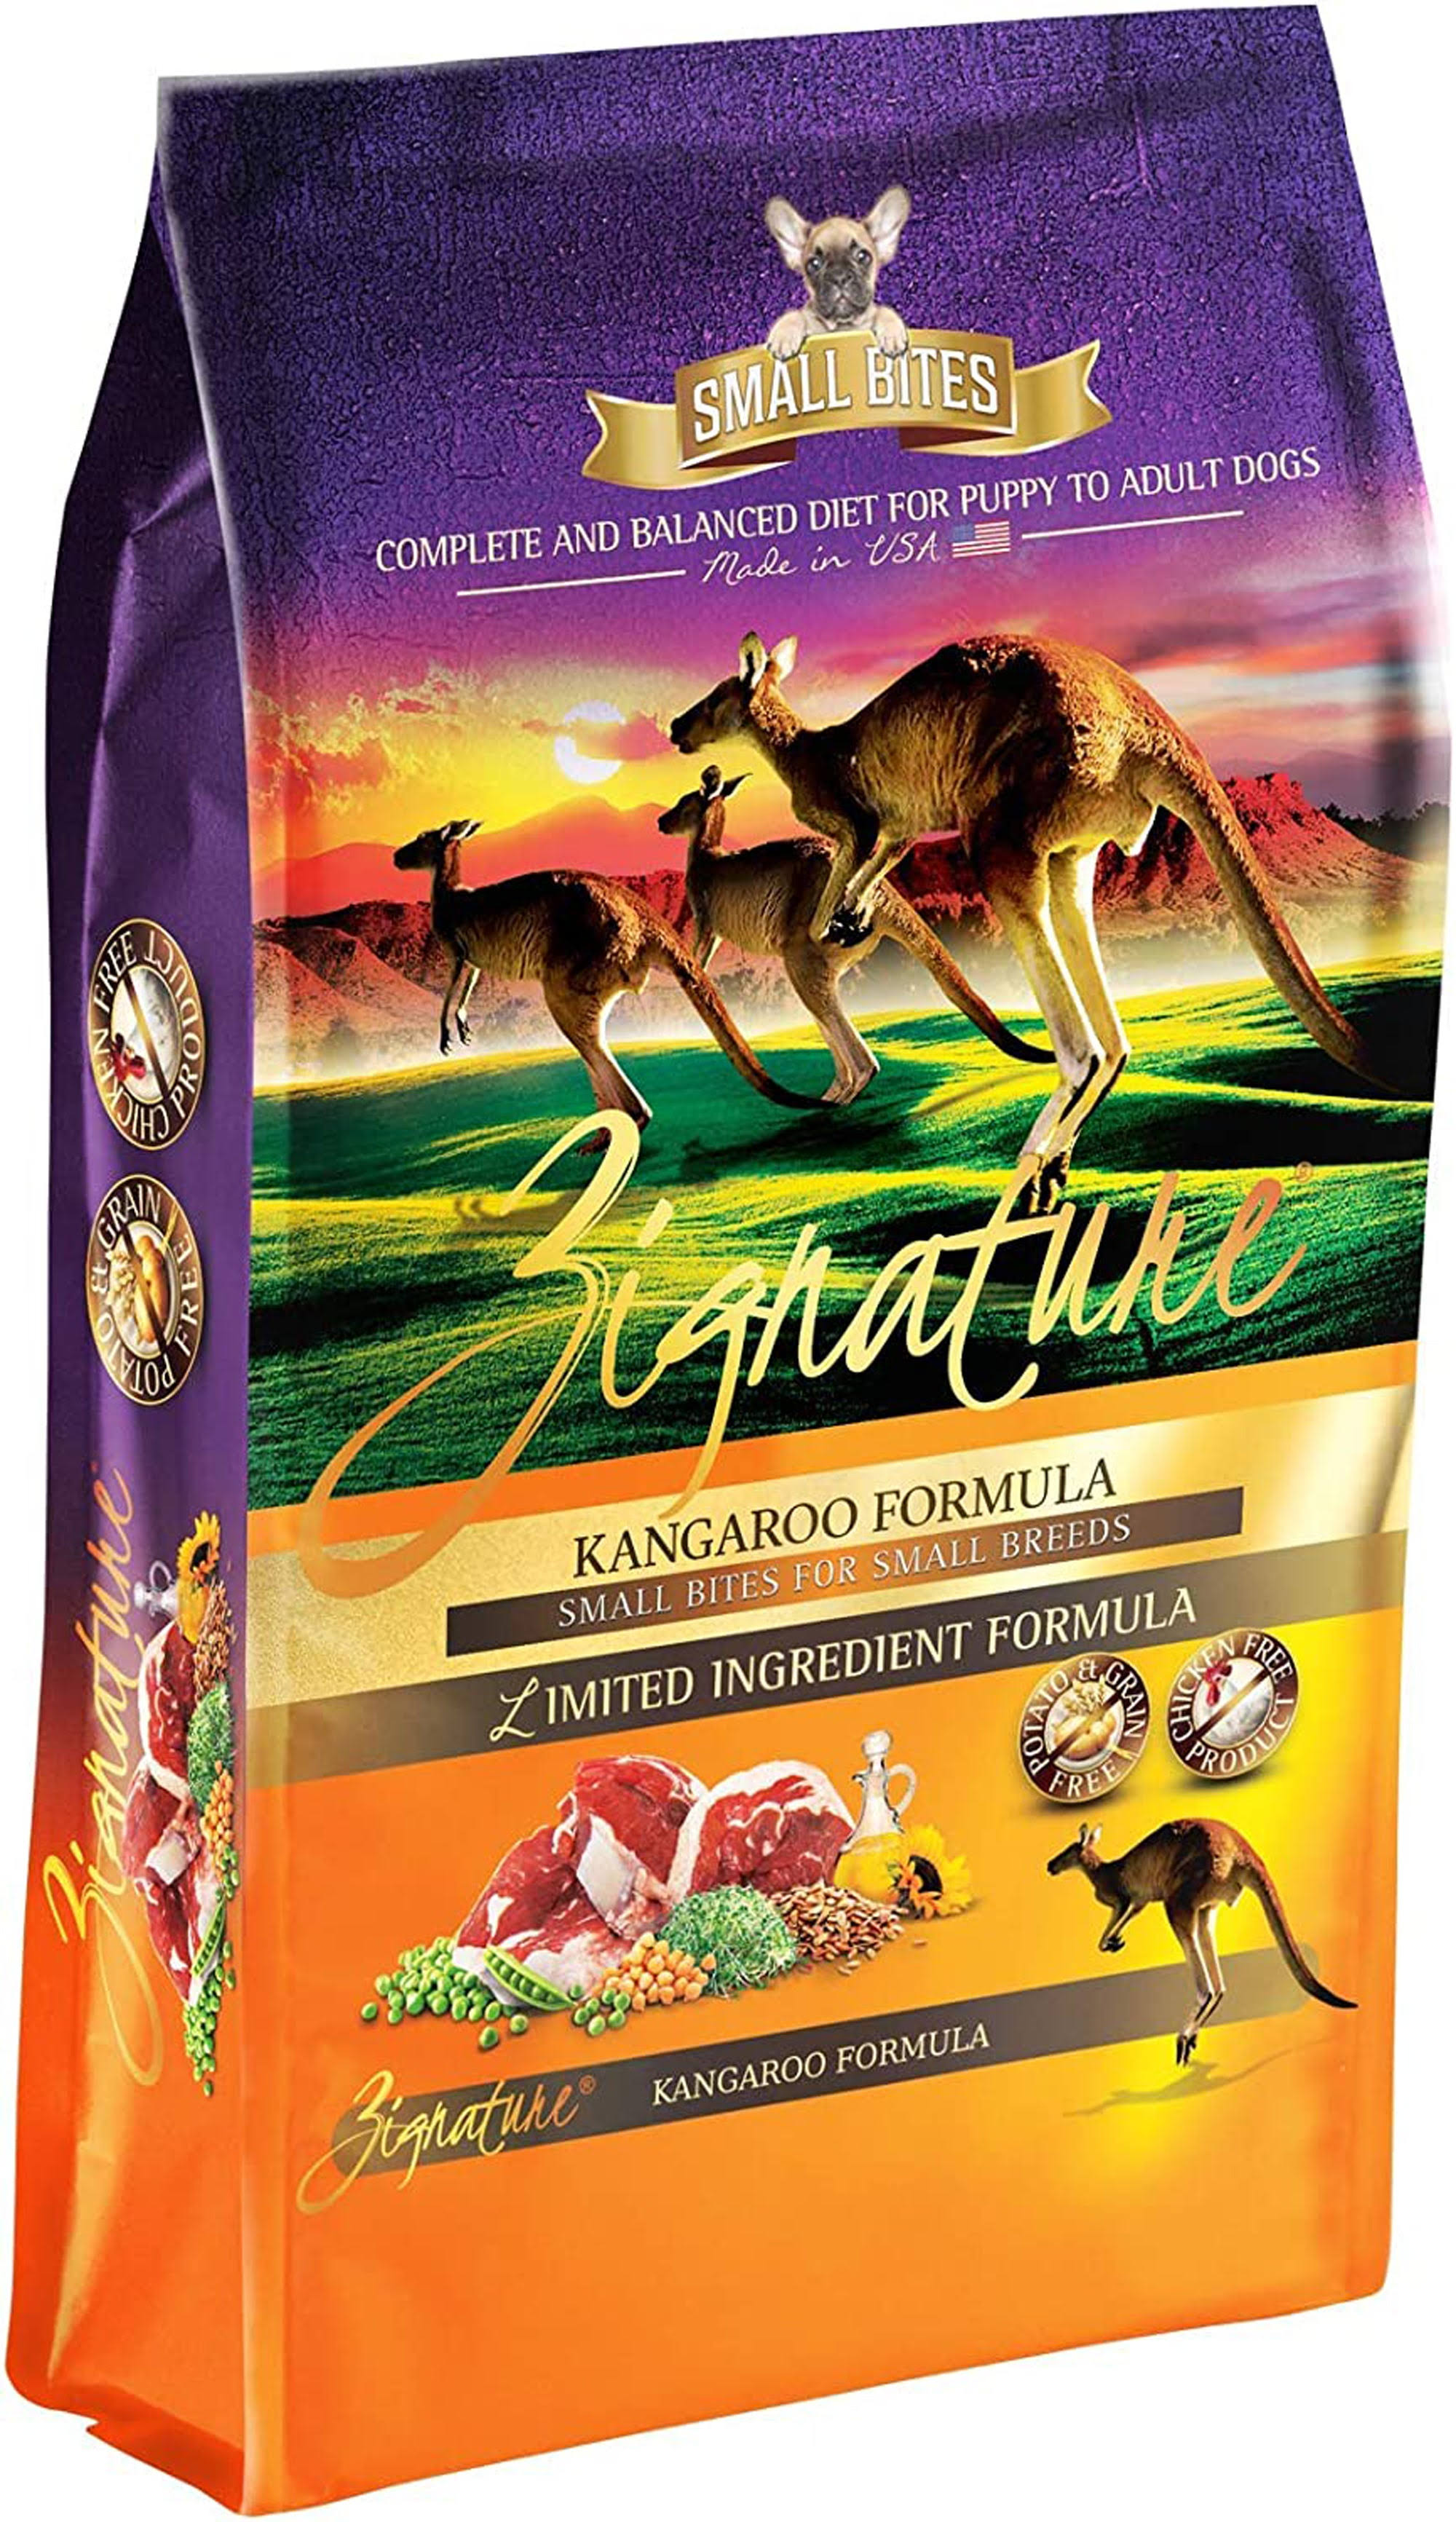 Zignature Kangaroo Formula Small Bites Dry Dog Food - 12.5 lbs